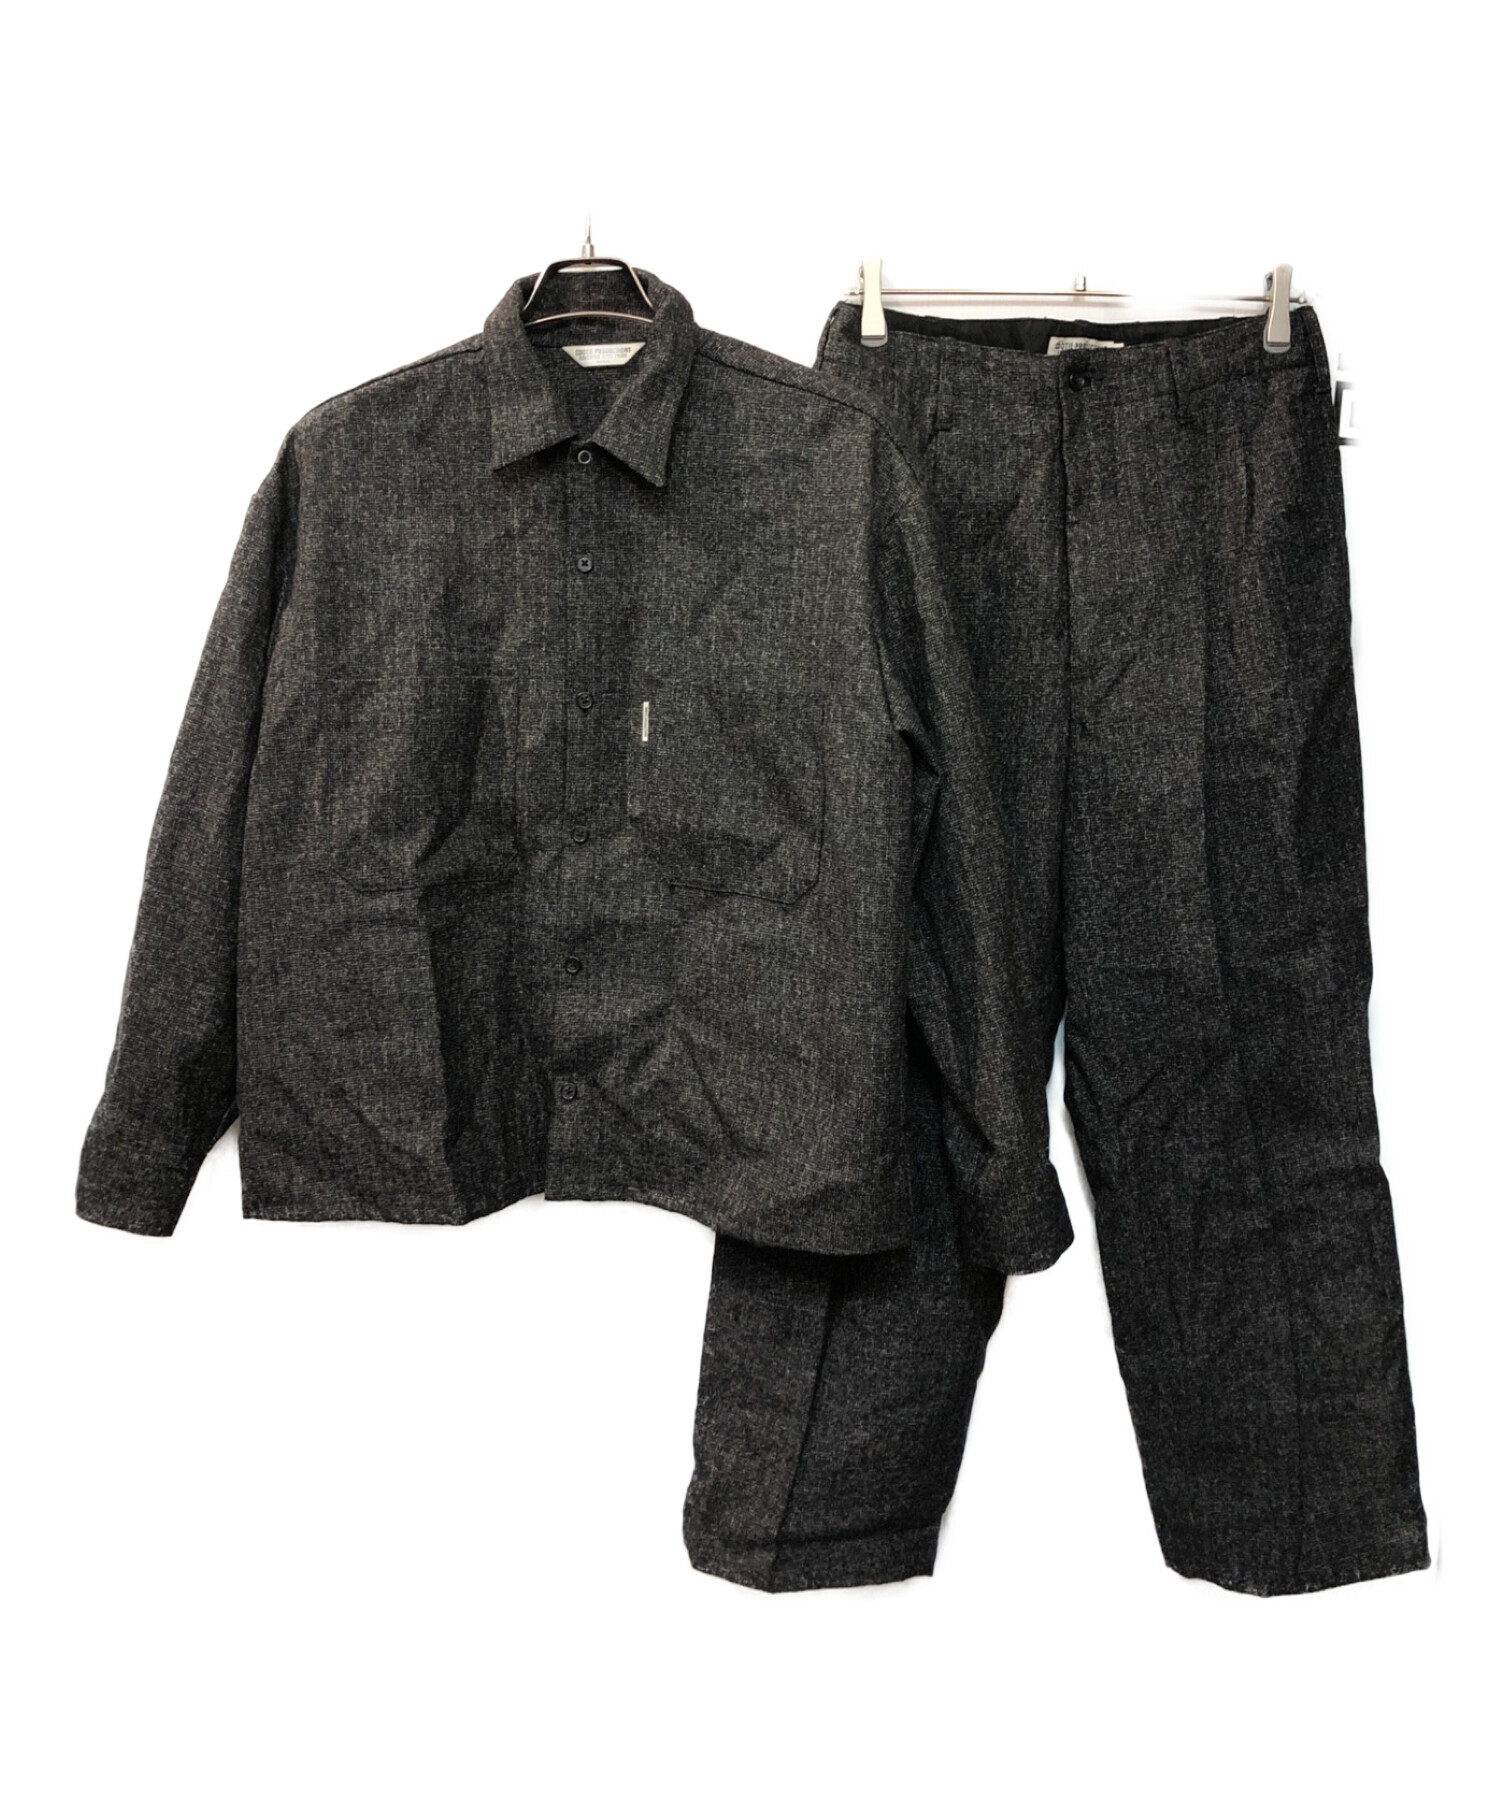 COOTIE (クーティー) Melange Wool Work Shirt Melange set up ブラック サイズ:S